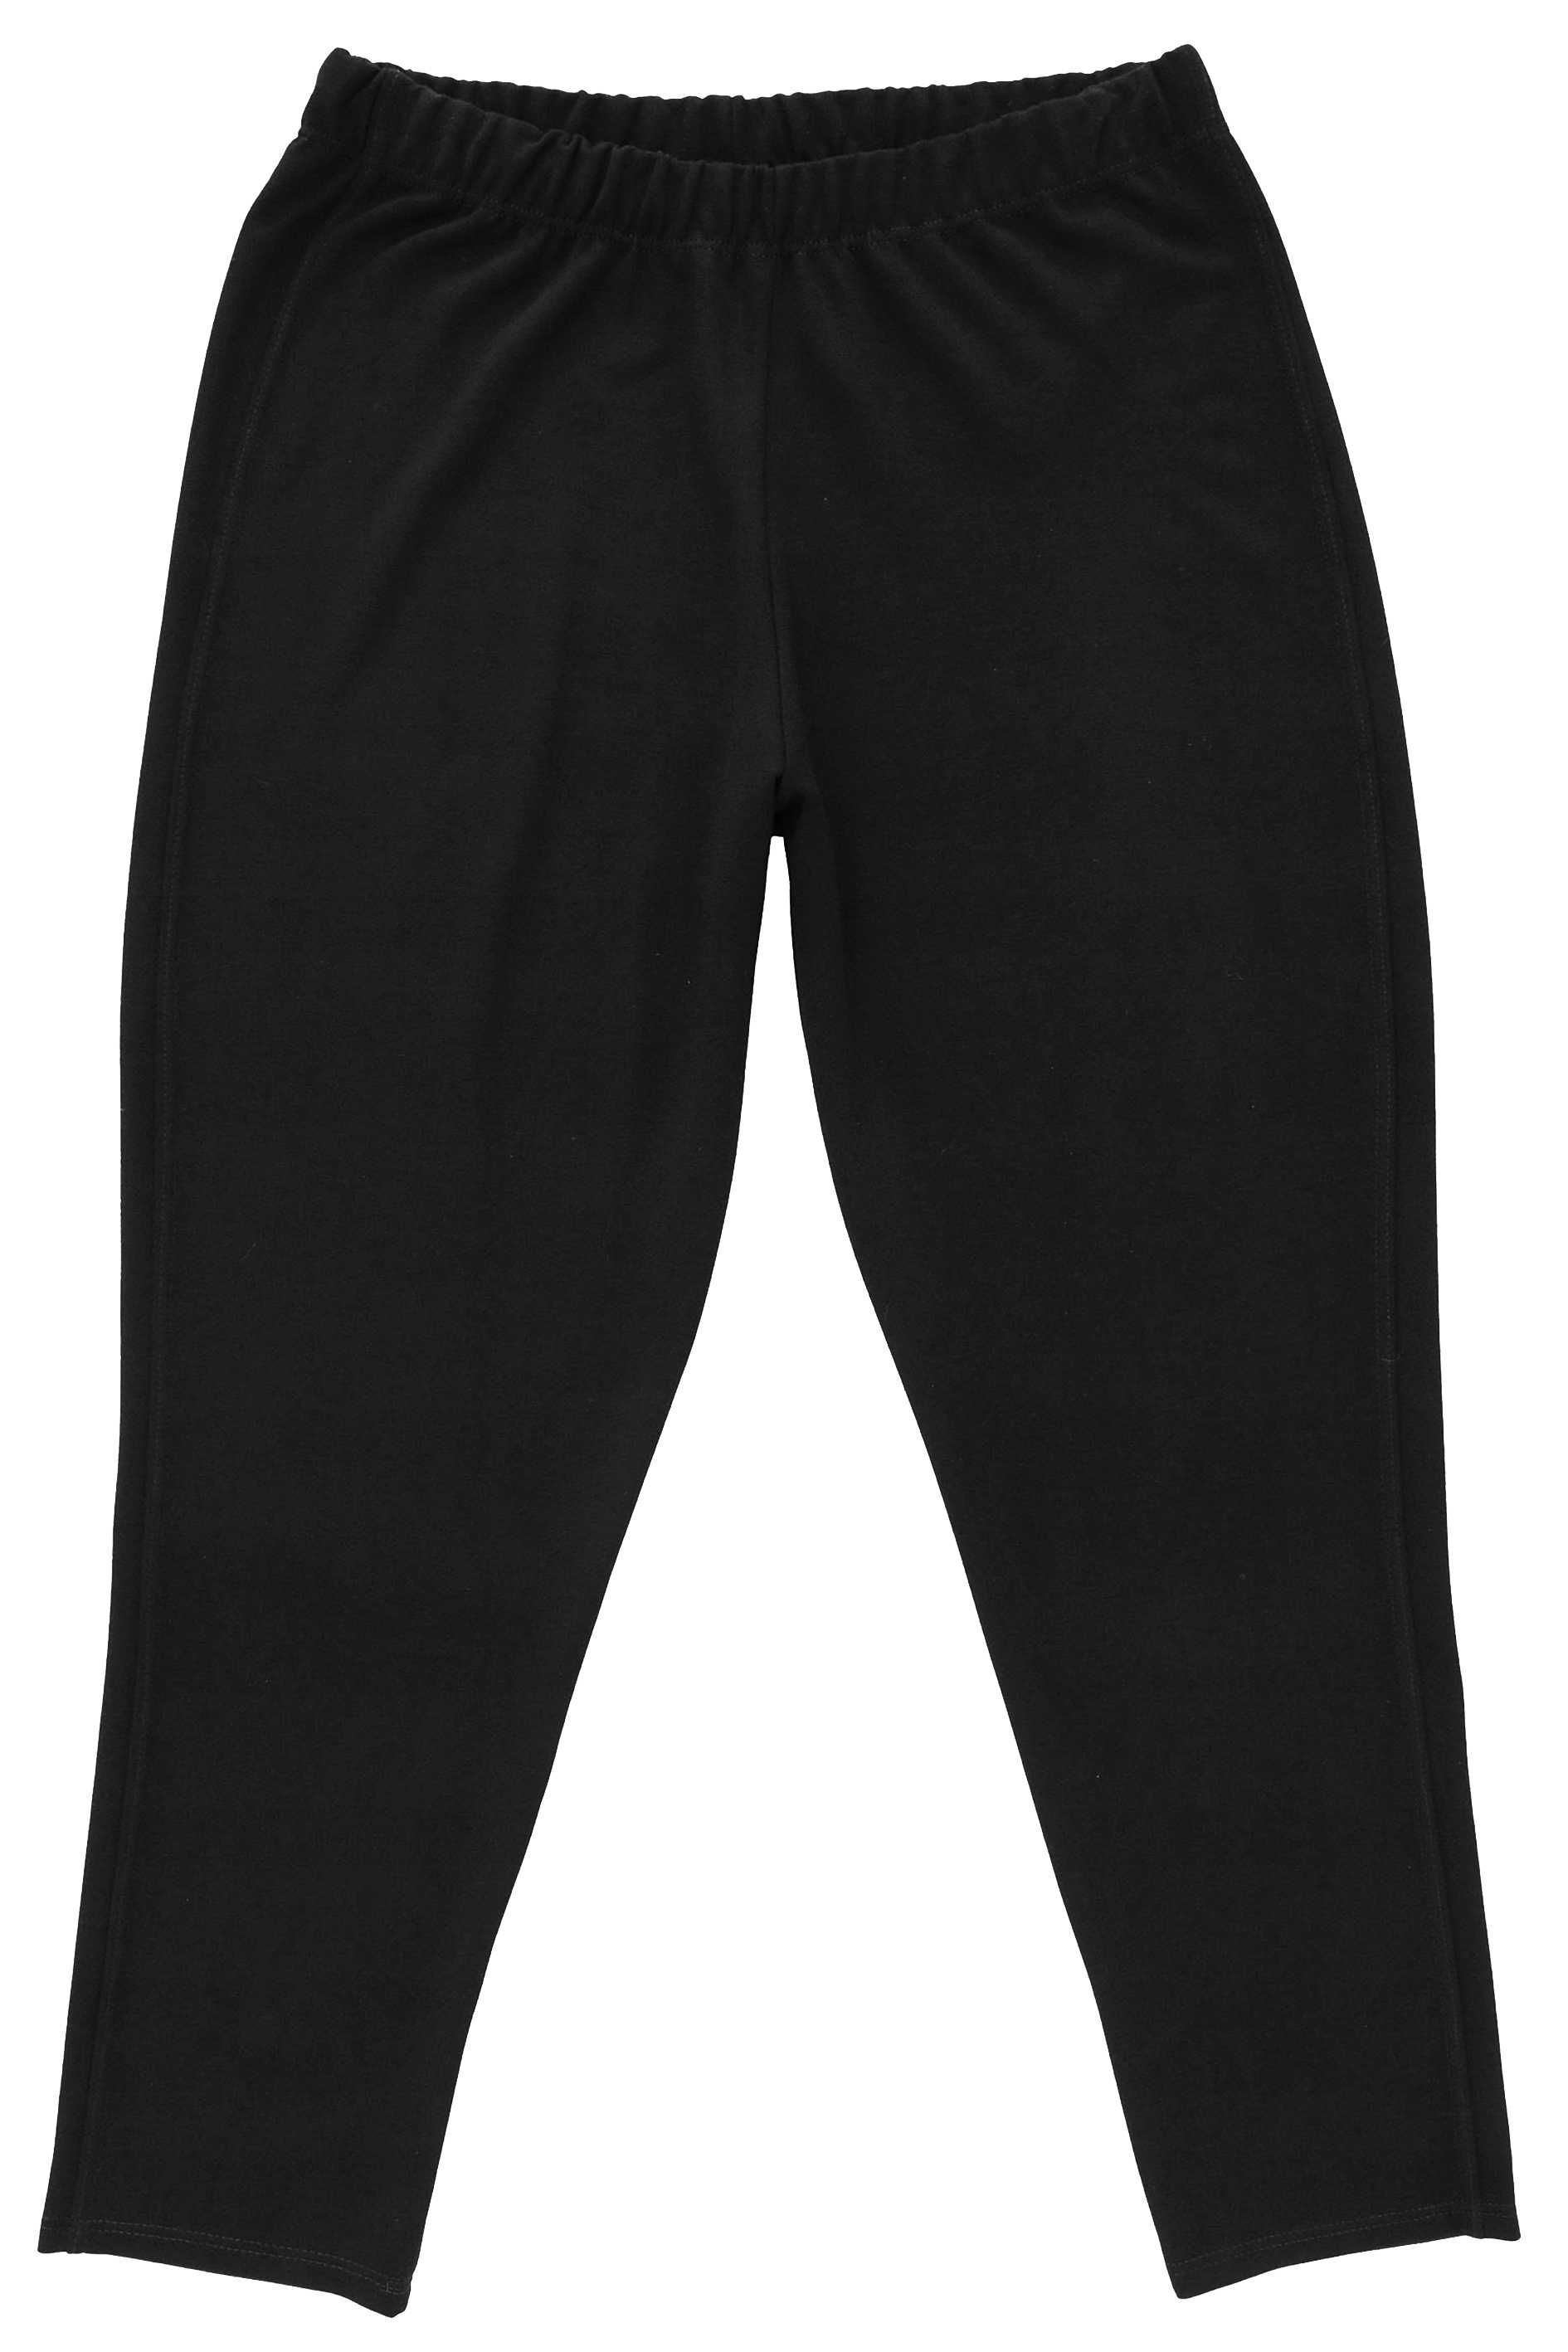 Spodnie dżersey - oxford wygodne, czarne, Plus Size 3XL - 54 / 56